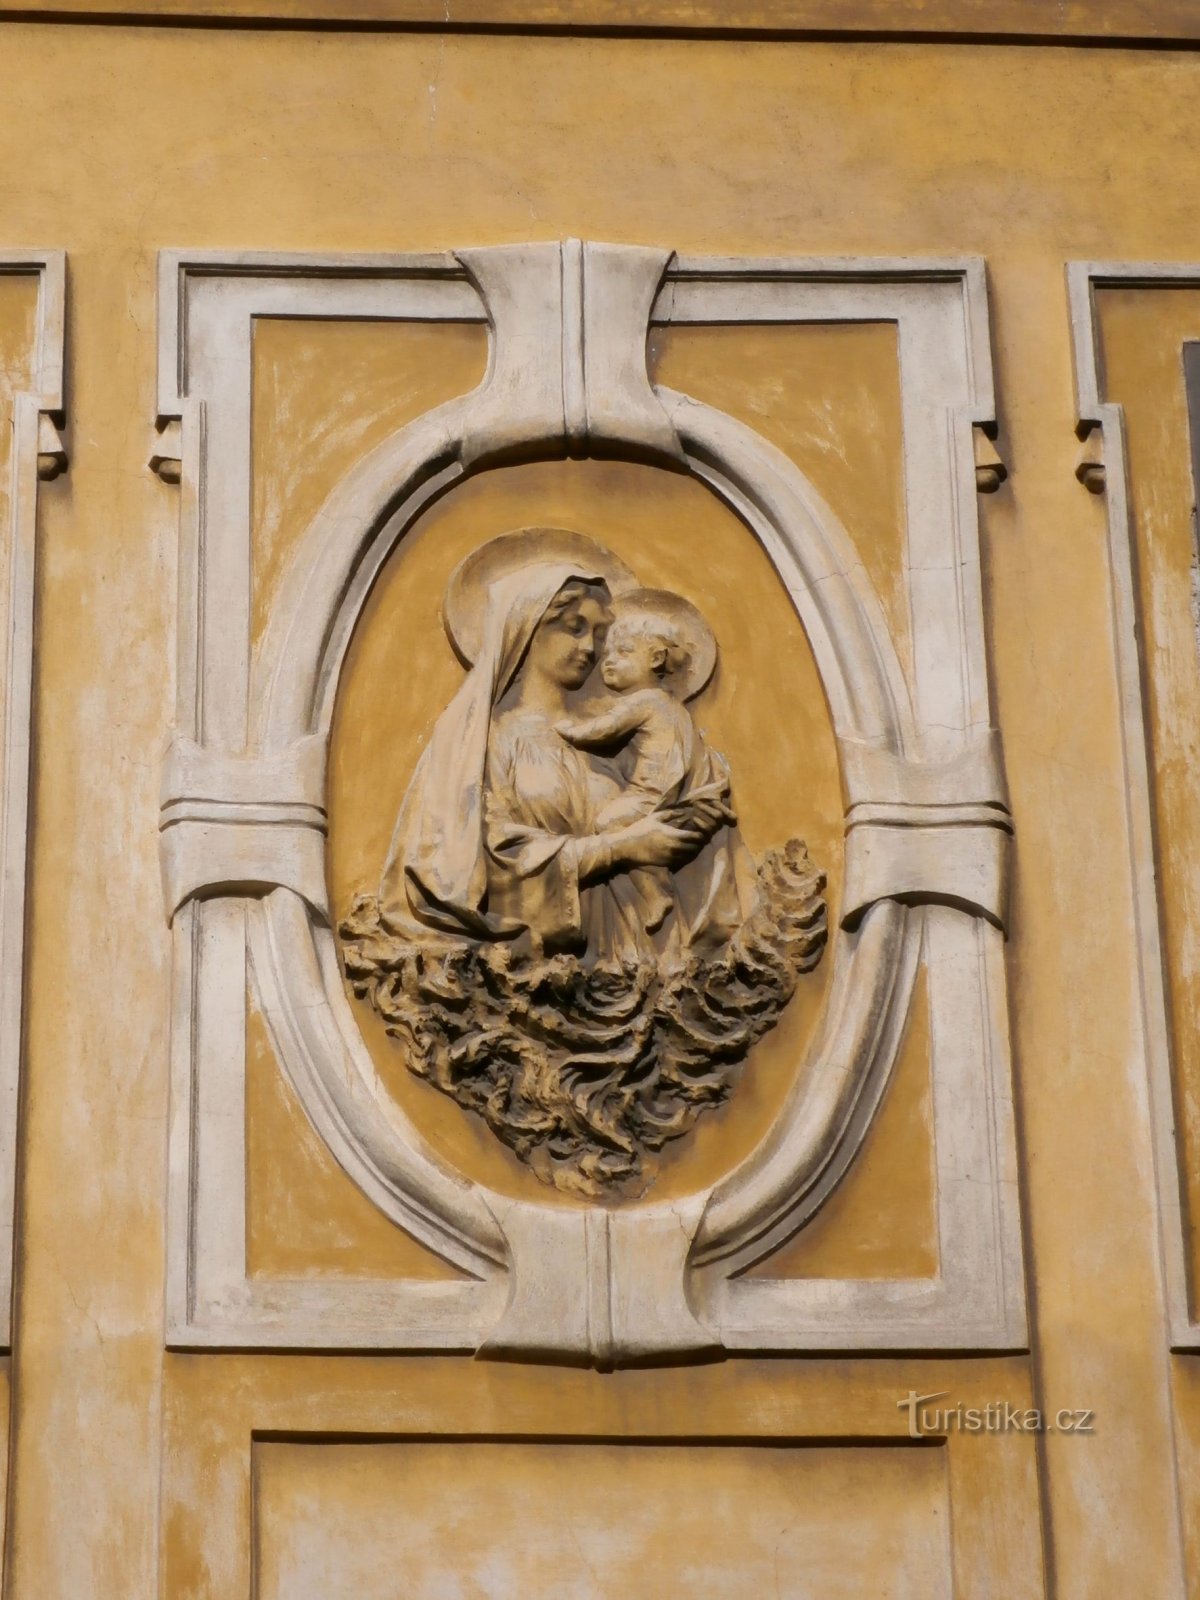 Rilievo della Vergine Maria con Gesù Bambino al n. 59 (Hradec Králové, 2.8.2014 agosto XNUMX)